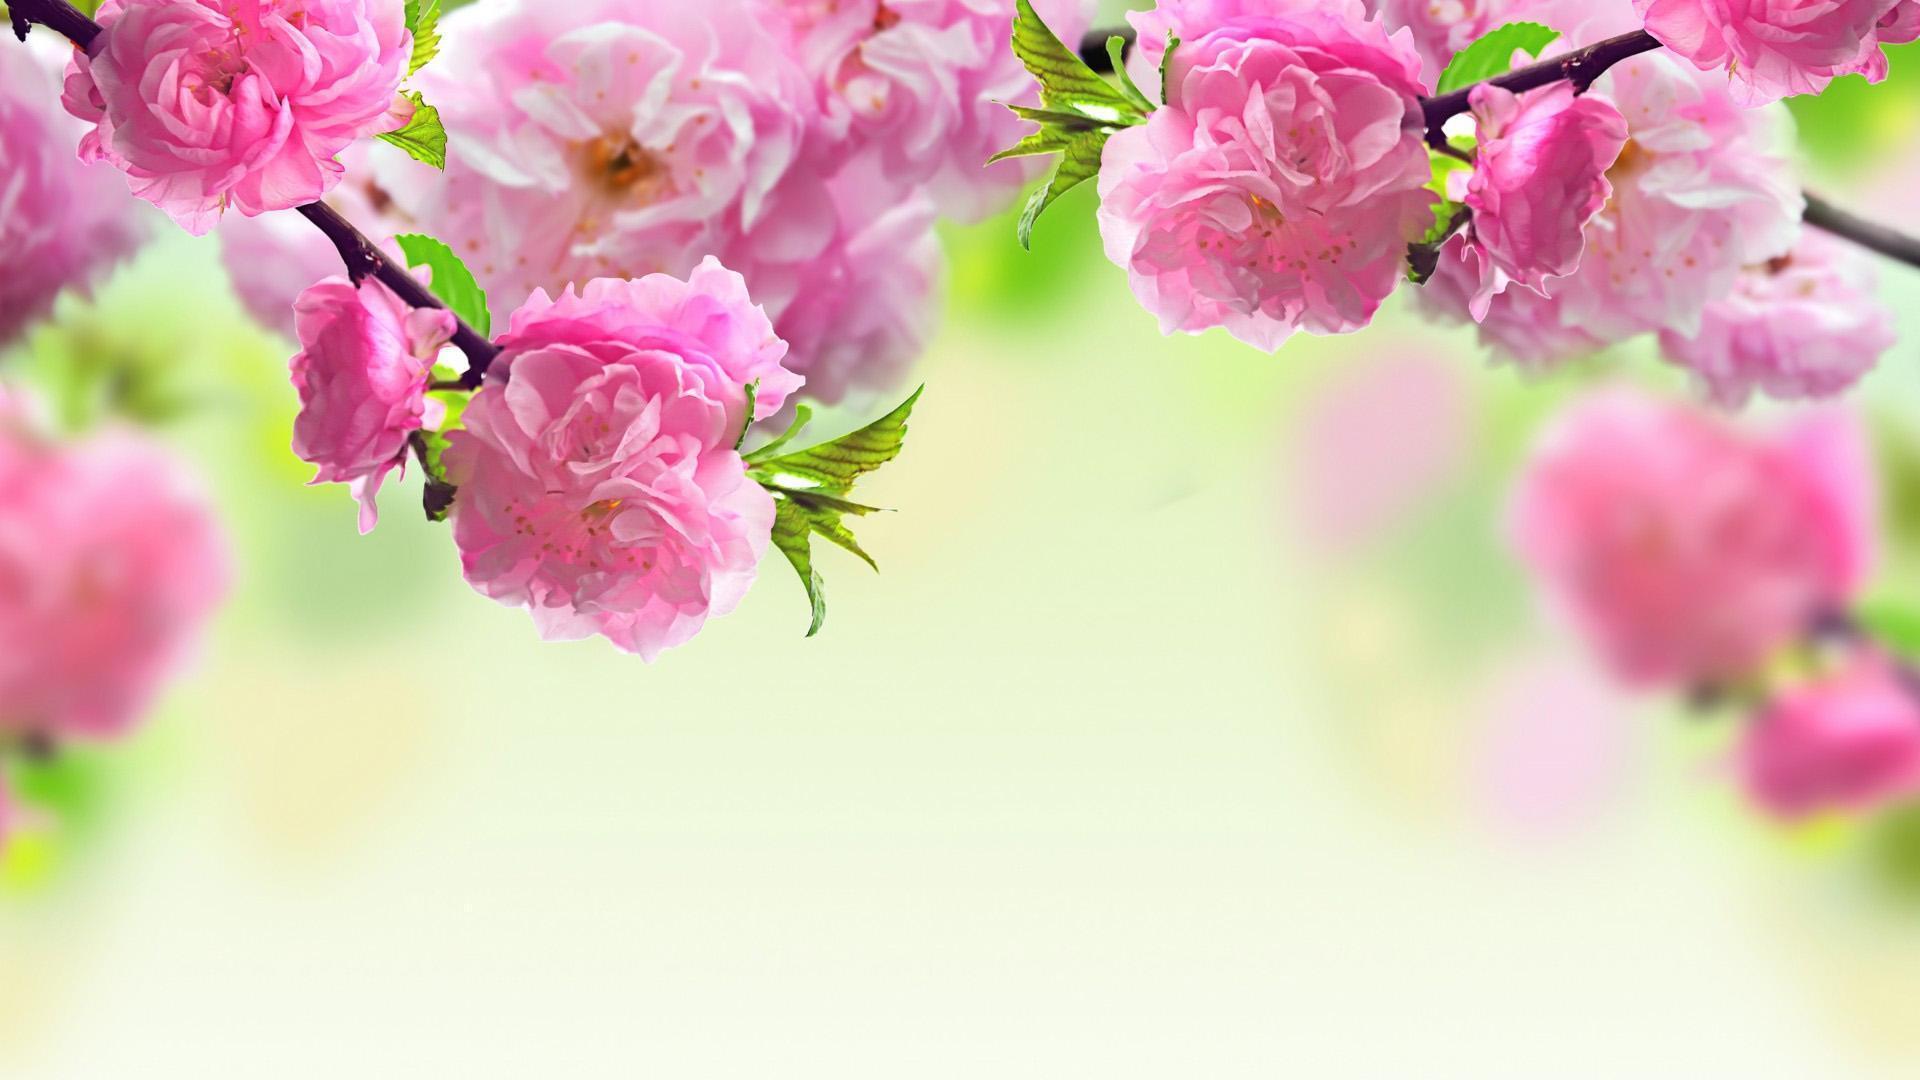 Chia sẻ: Chia sẻ hình ảnh đẹp trong mùa xuân là cách thể hiện tình yêu đối với thiên nhiên. Hãy cùng chia sẻ những khoảnh khắc tươi vui, những bông hoa rực rỡ và giữa không gian thiên nhiên trong mùa xuân để tạo ra niềm vui cho những người xung quanh.